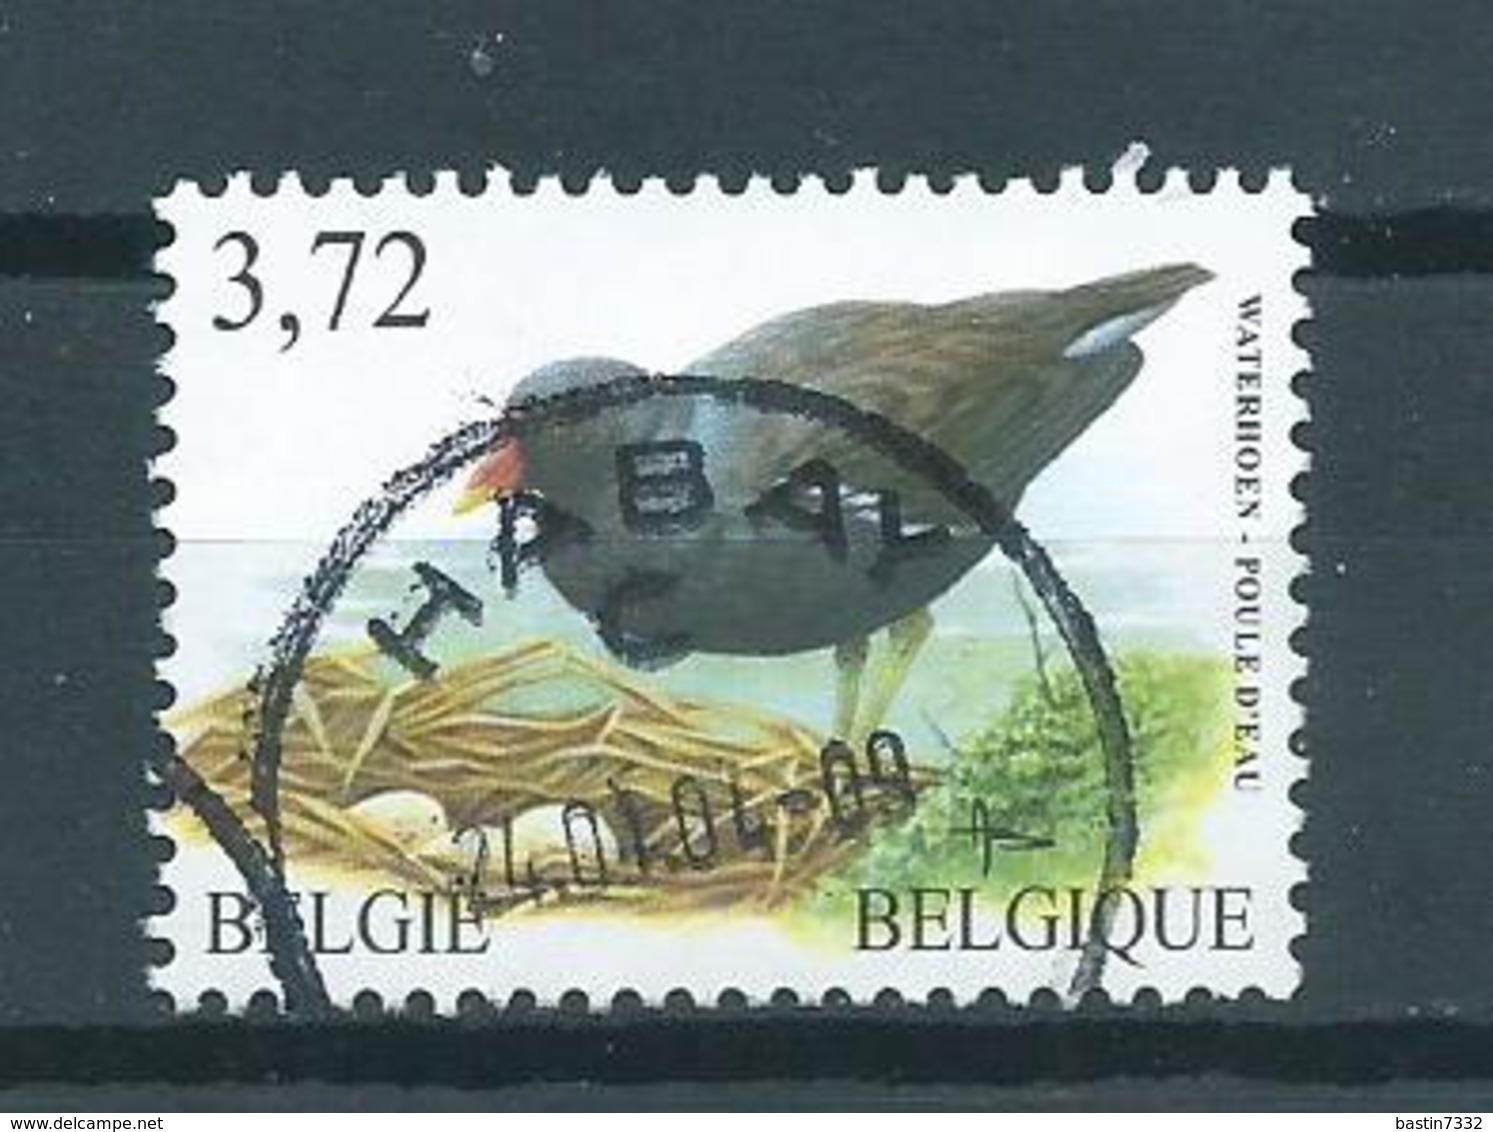 2003 Belgium 3,72 EURO Buzin Birds,oiseaux,vögel,waterhoen Used/gebruikt/oblitere - Gebruikt